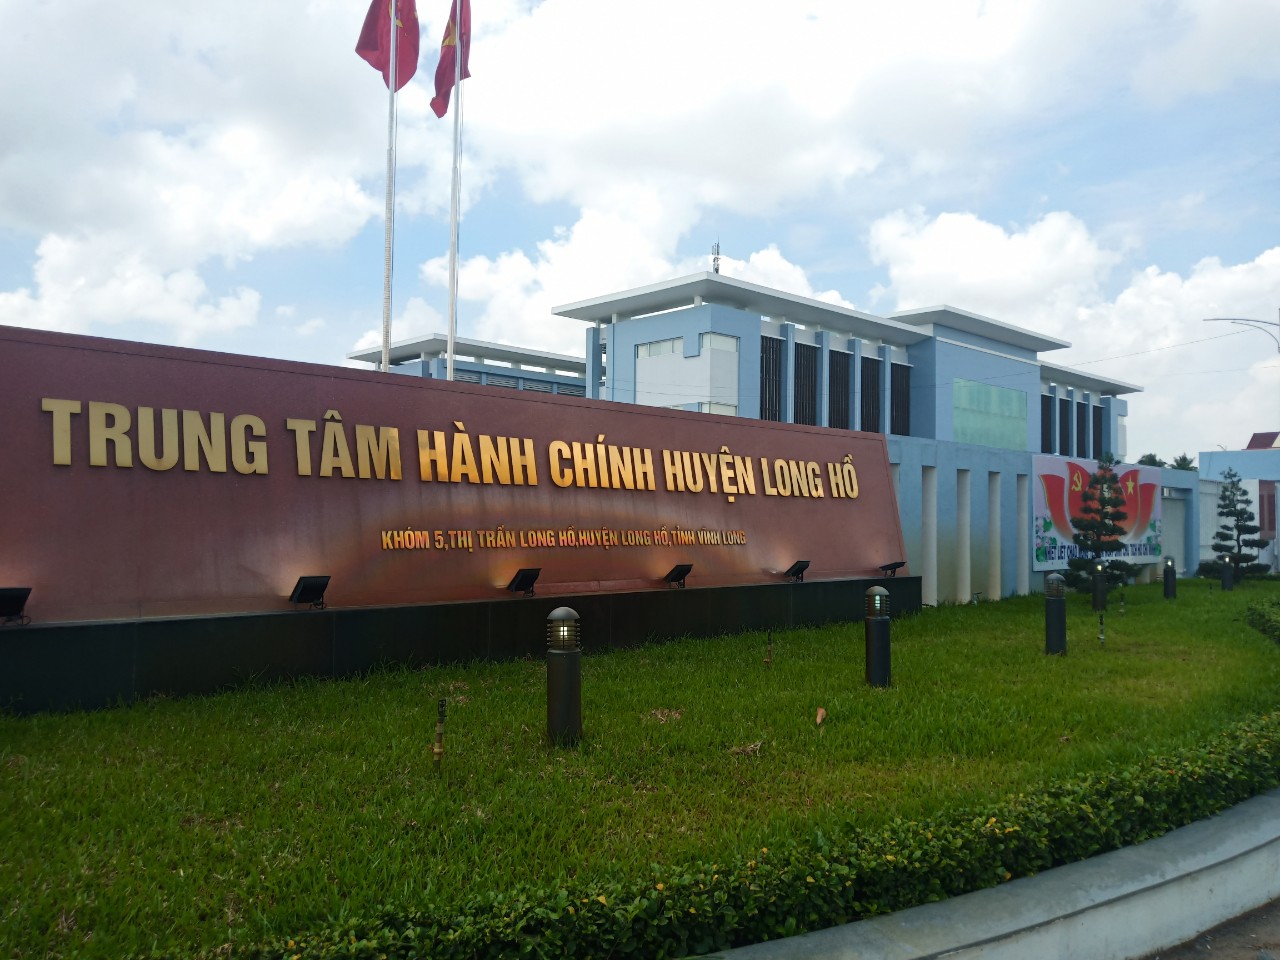 Dịch vụ cung cấp tấm sàn nâng giá rẻ tại Trung tâm hành chính huyện Long Hồ